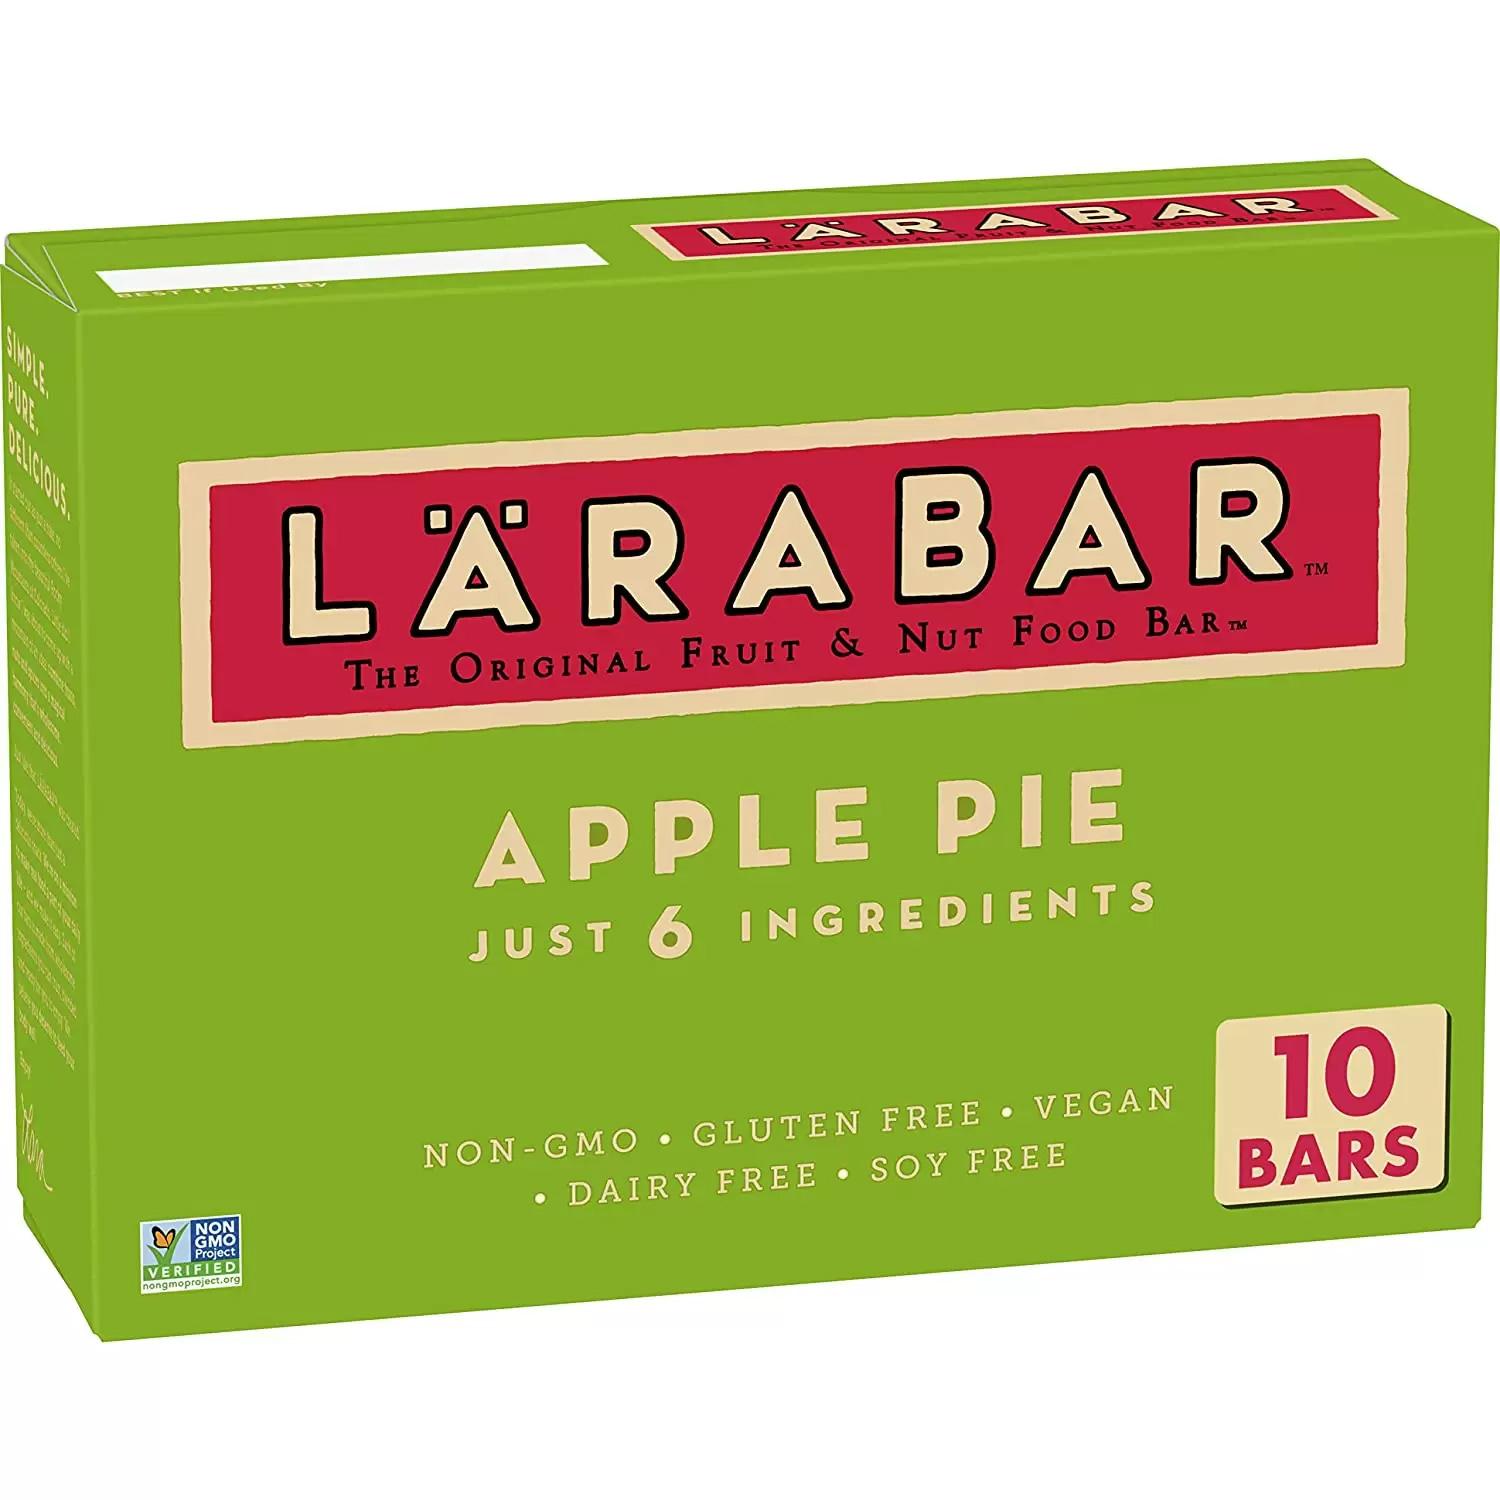 10 Larabar Apple Pie Bar for $6.36 Shipped